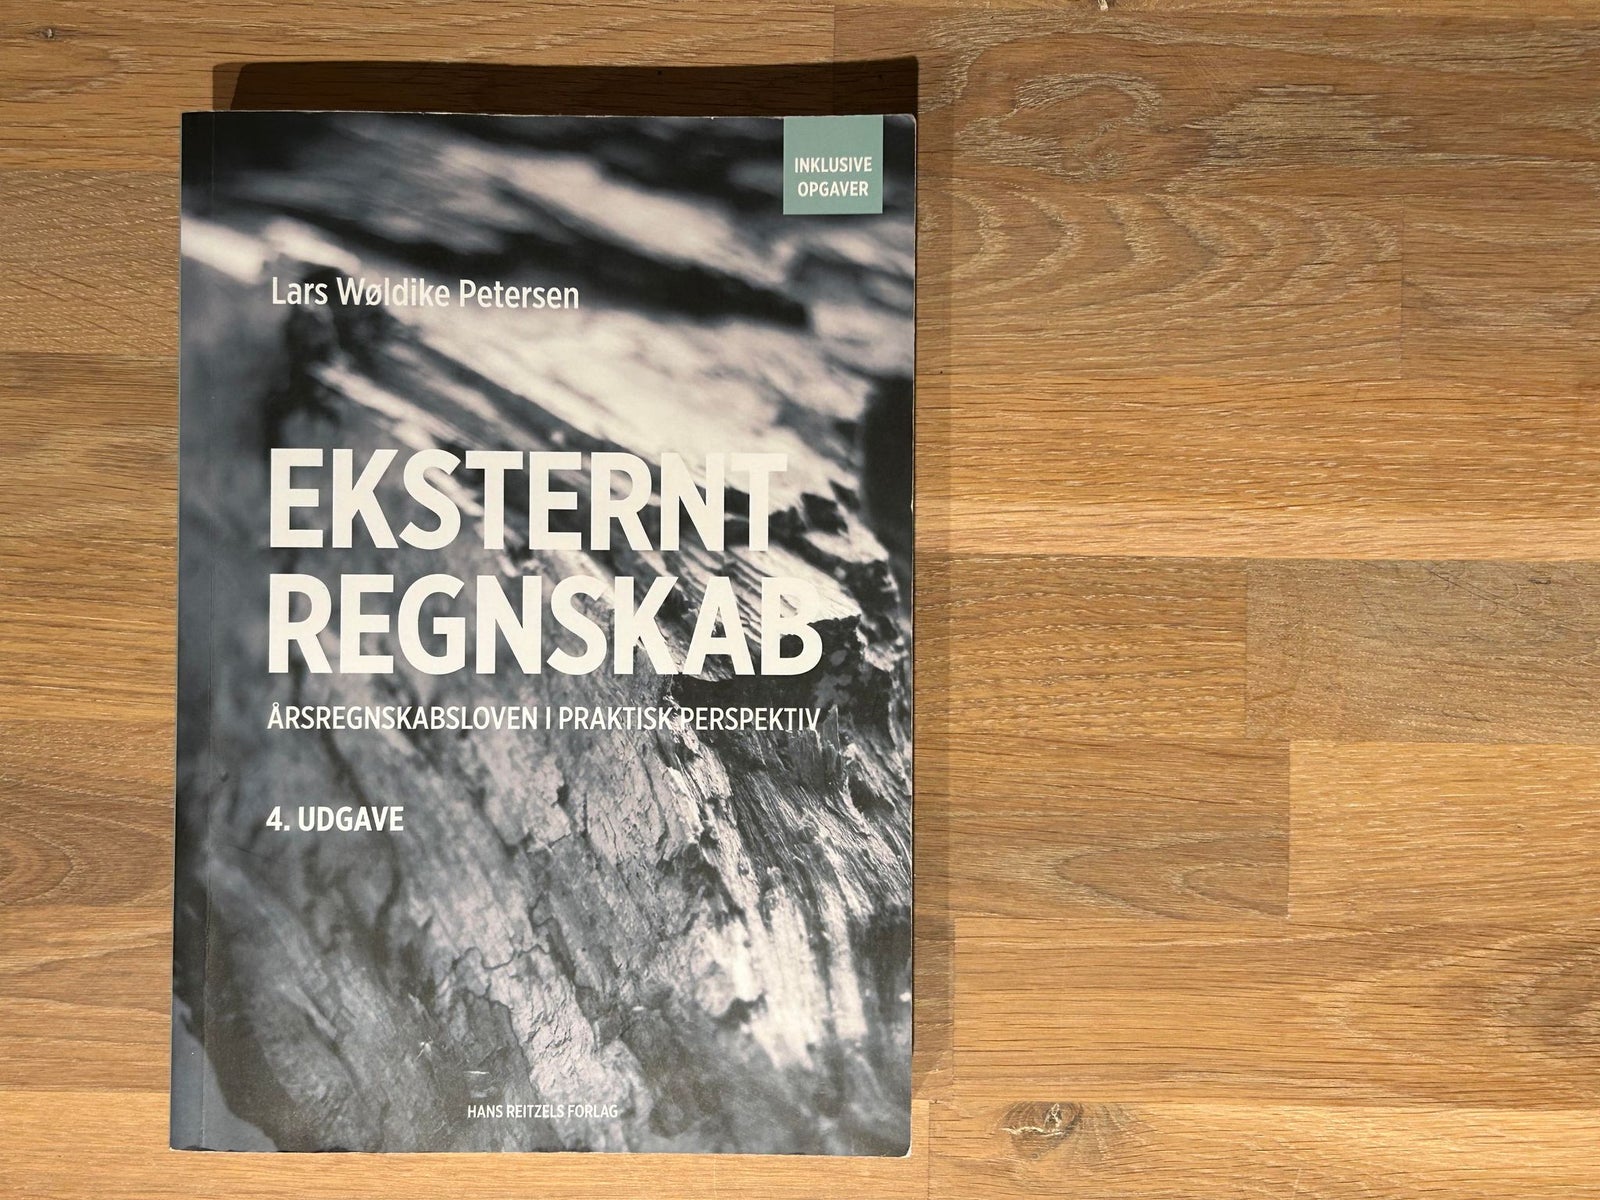 Eksternt Regnskab, Lars Wøldike Petersen, 4. udgave